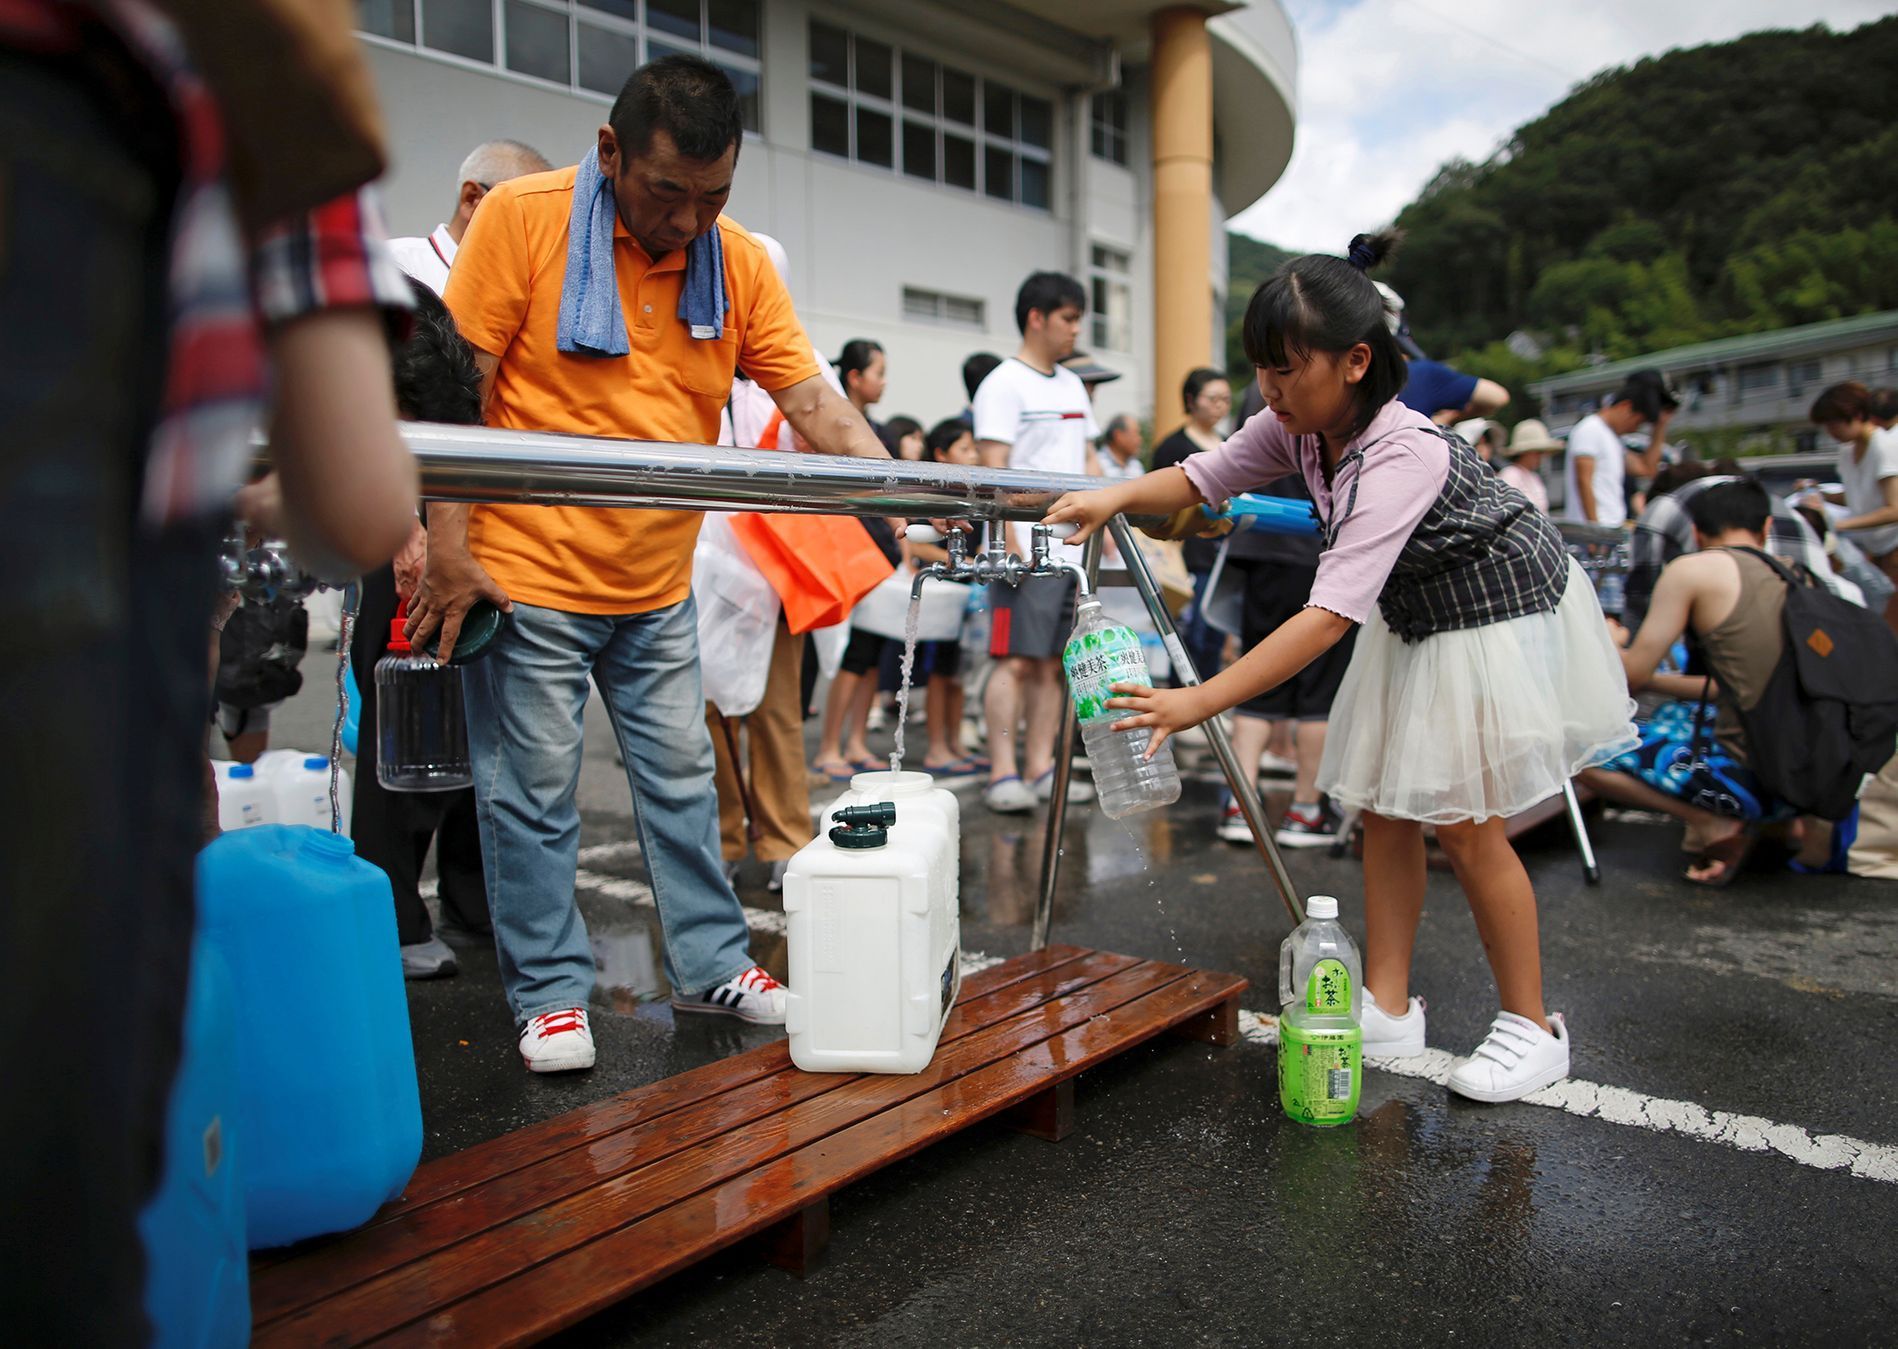 Fotogalerie / Záplavy v Japonsku / Reuters / Červenec 2018 / 18